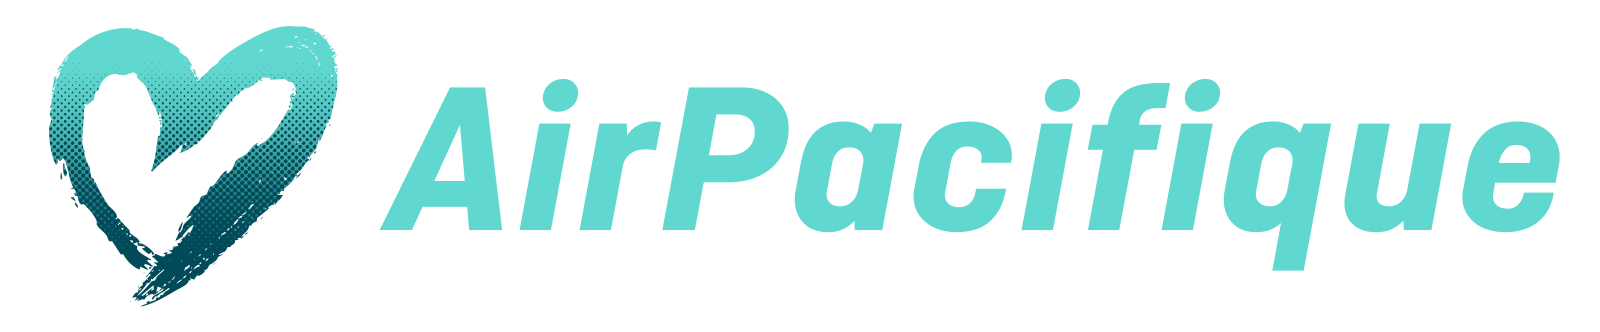 Air_Pacifique_logo.png